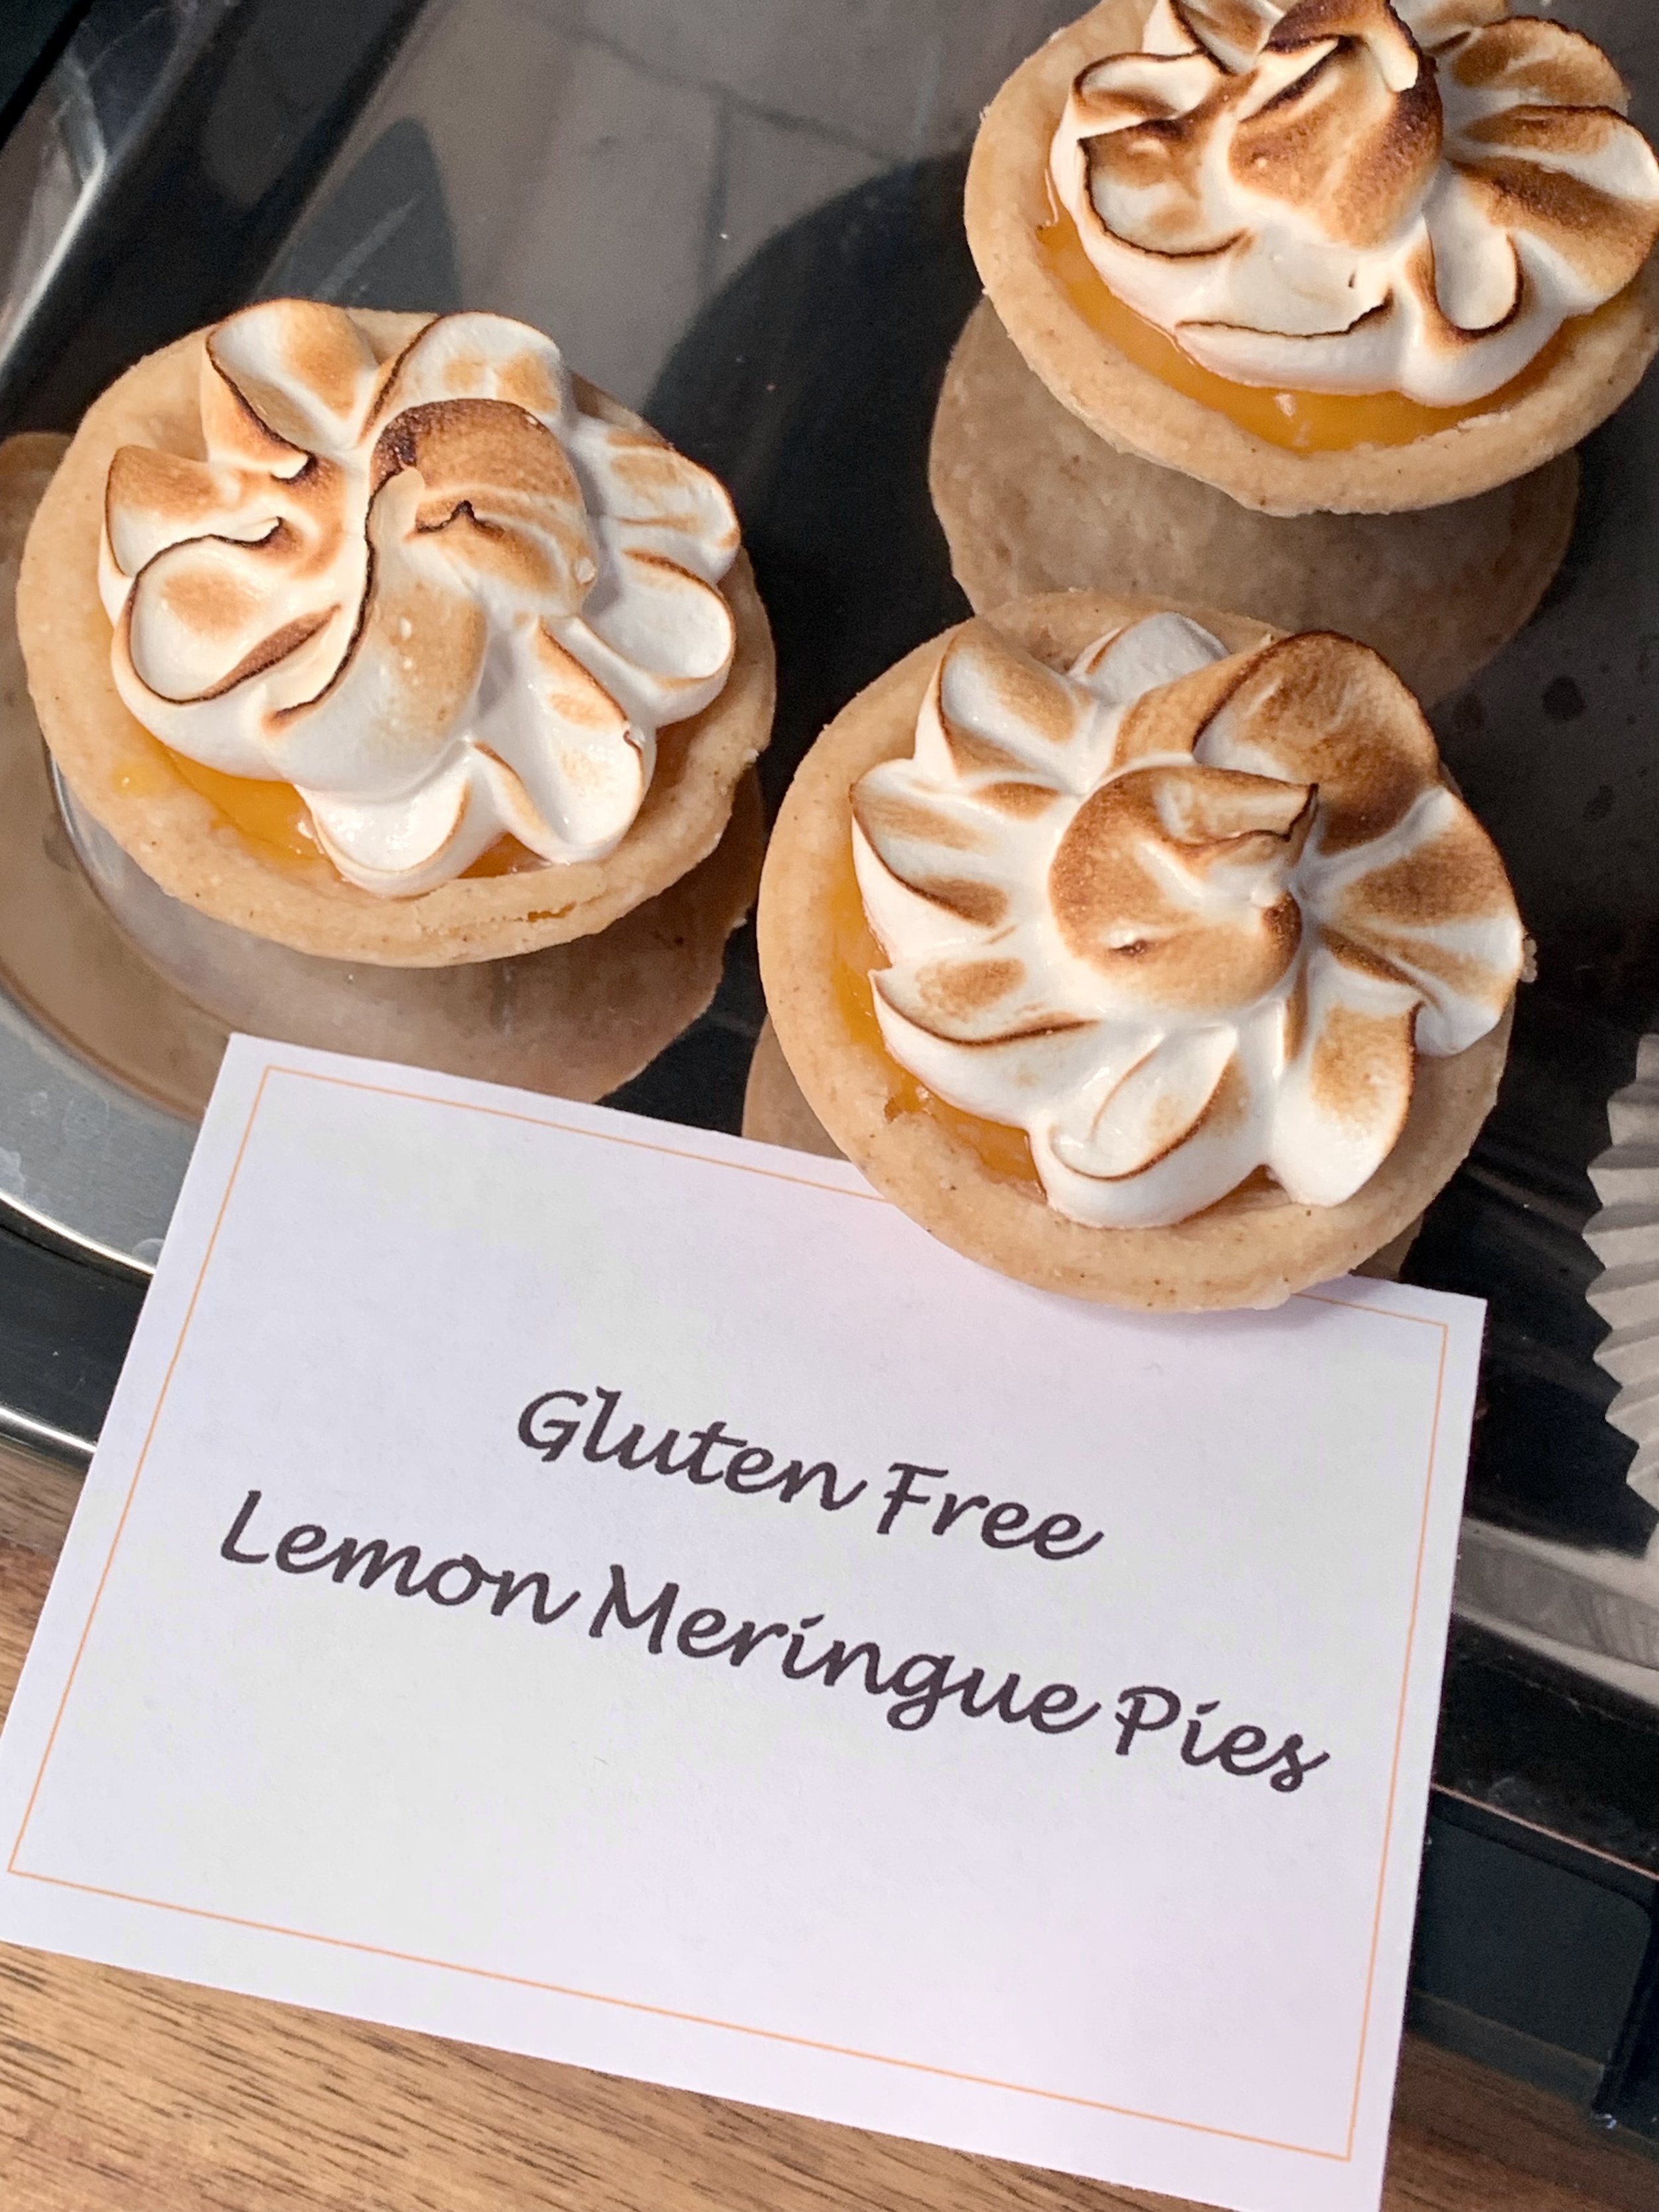 Lemon Meriingue Pies.JPG